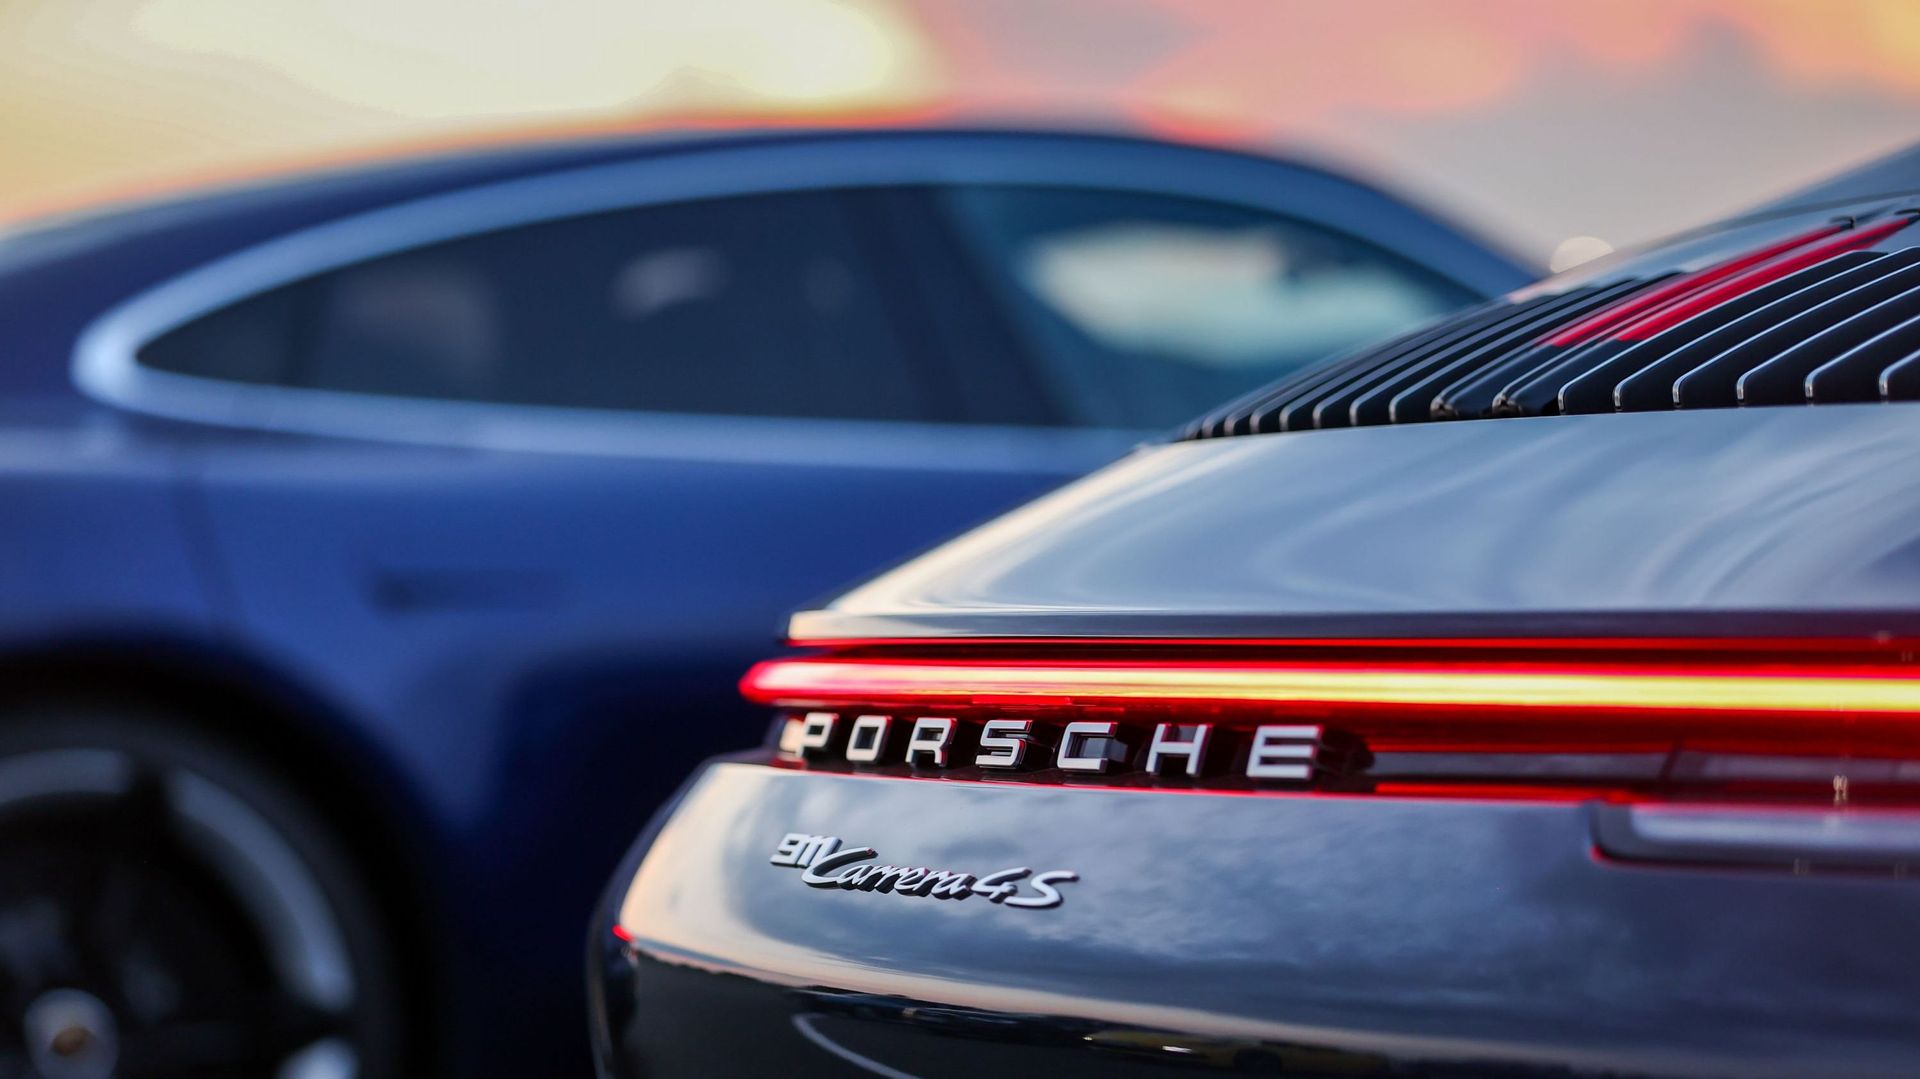 Porsche aurait-il manipulé les émissions de CO2 de certaines de ses voitures ? Une enquête en cours